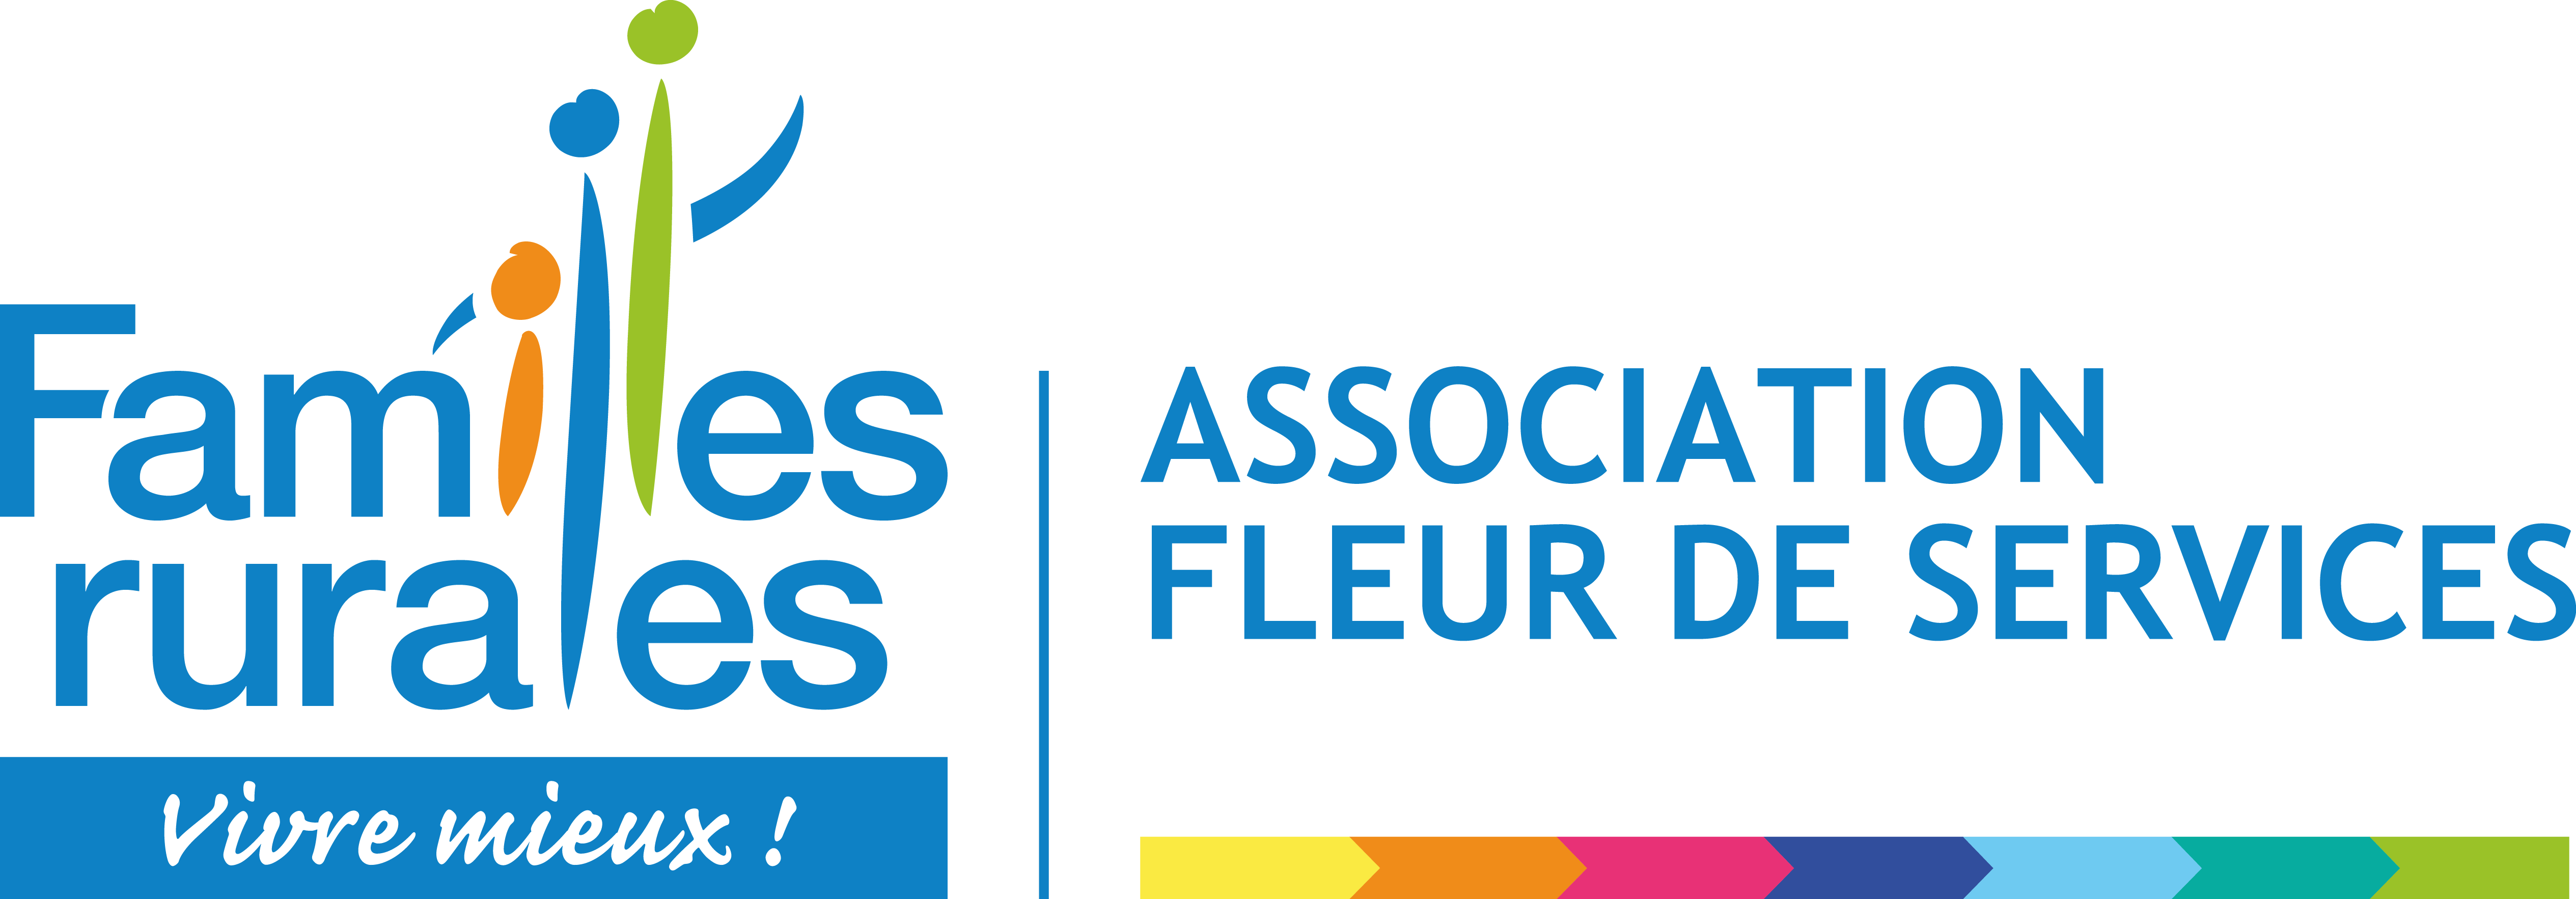 logo_FLEUR_DE_SERVICES.png